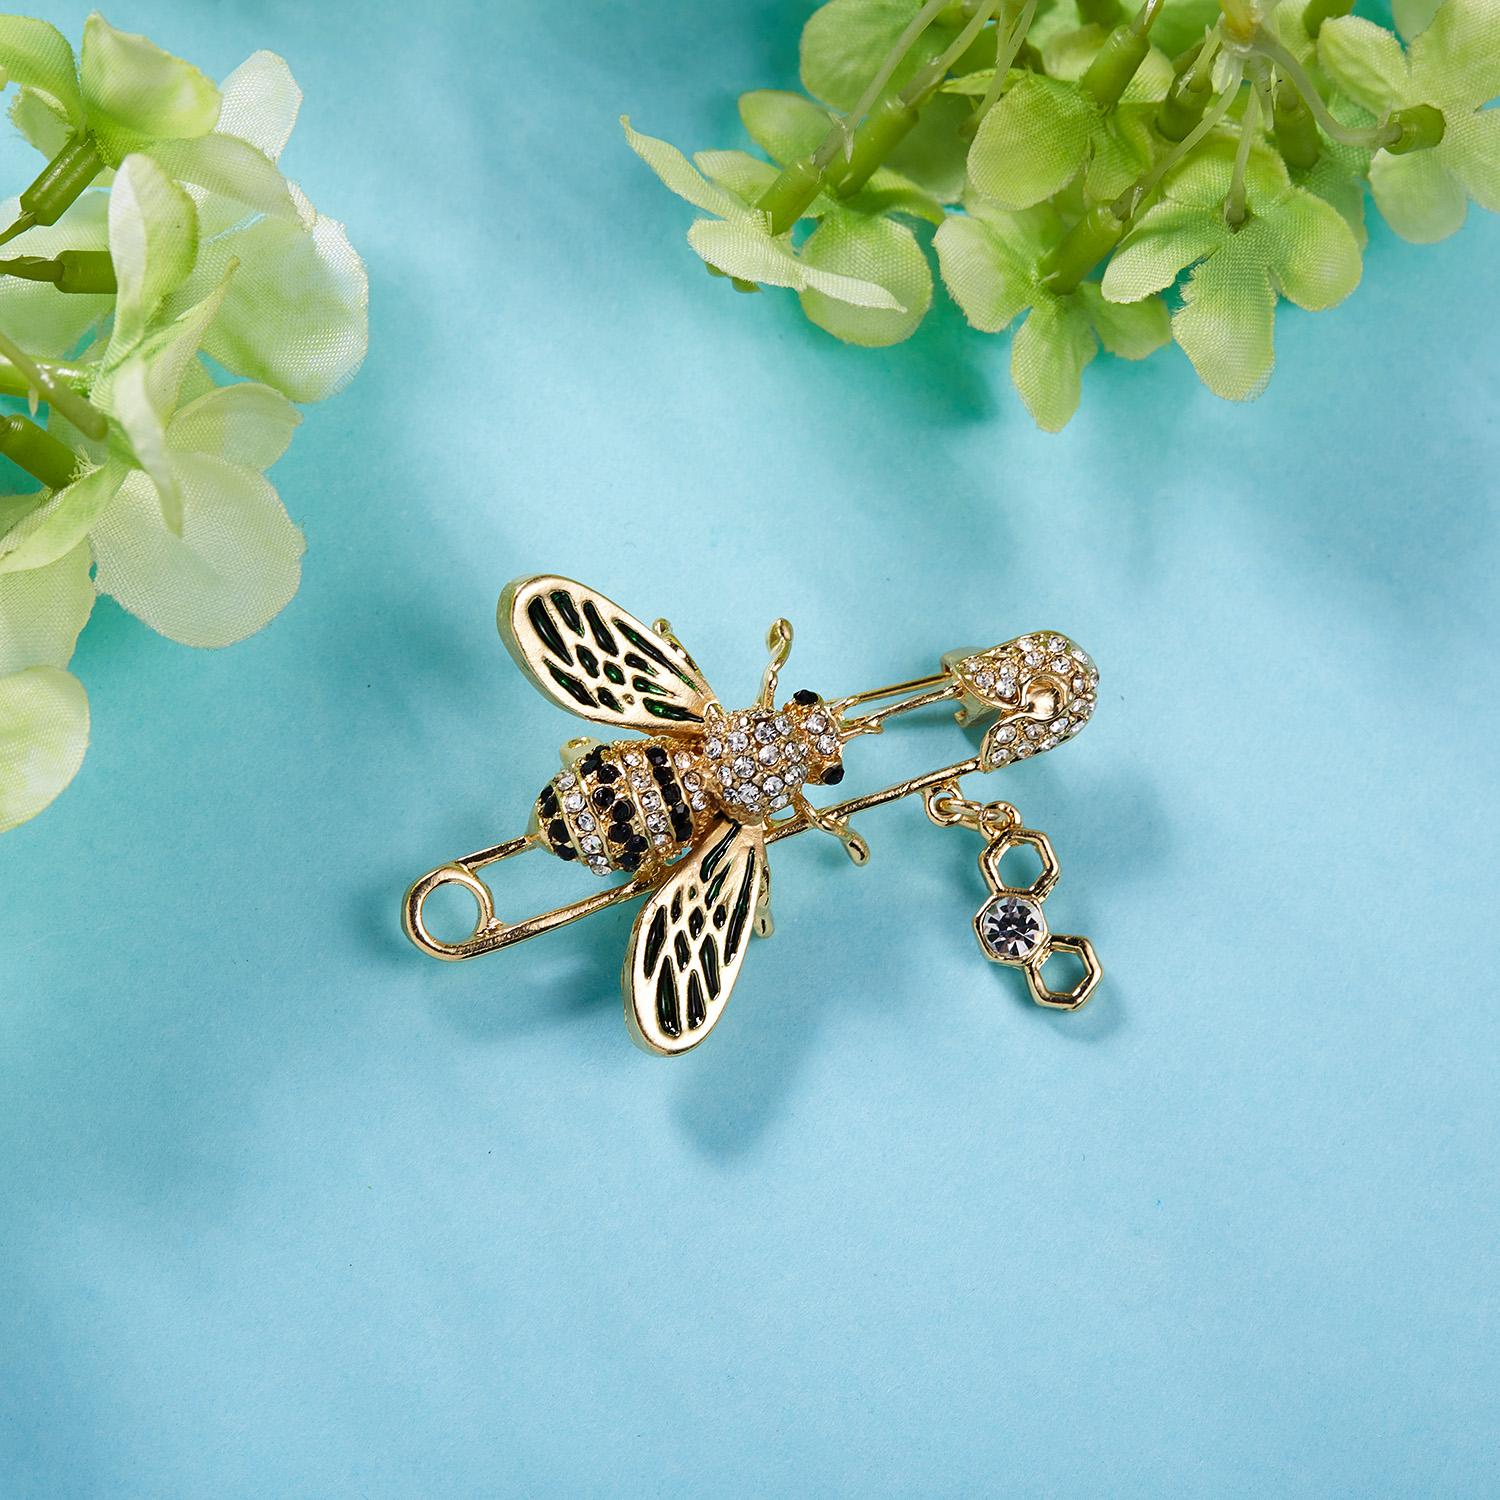 Изображение товара: Rinhoo Мода с изображением стрекозы, пчелы большие броши, булавки для женщин Стразы насекомые модели Брошь ювелирные изделиям из эмали, подарок для женщины